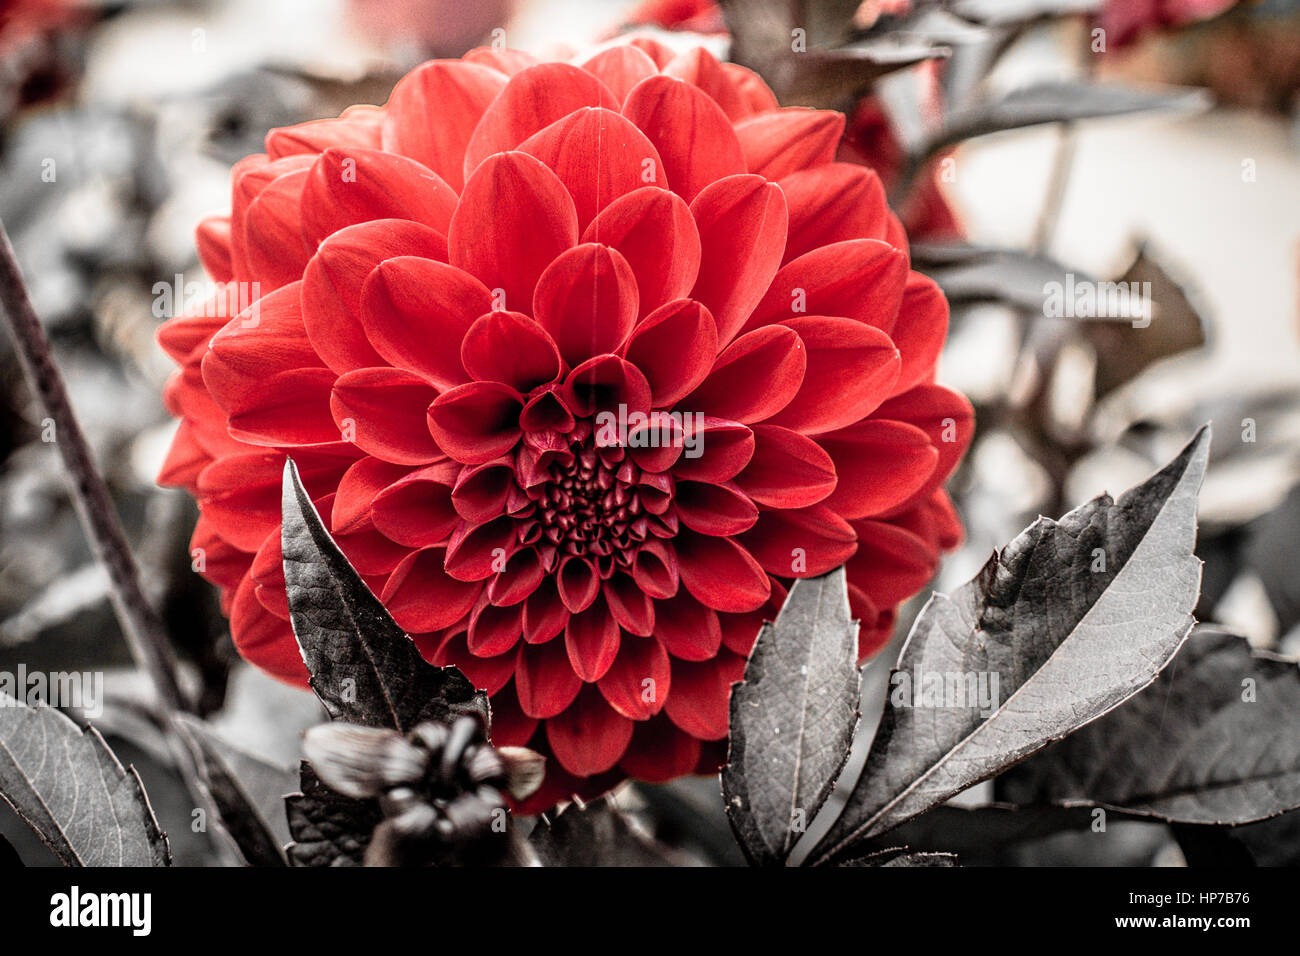 Dahlia rouge unique bloom dans autrement photographie monochrome Banque D'Images